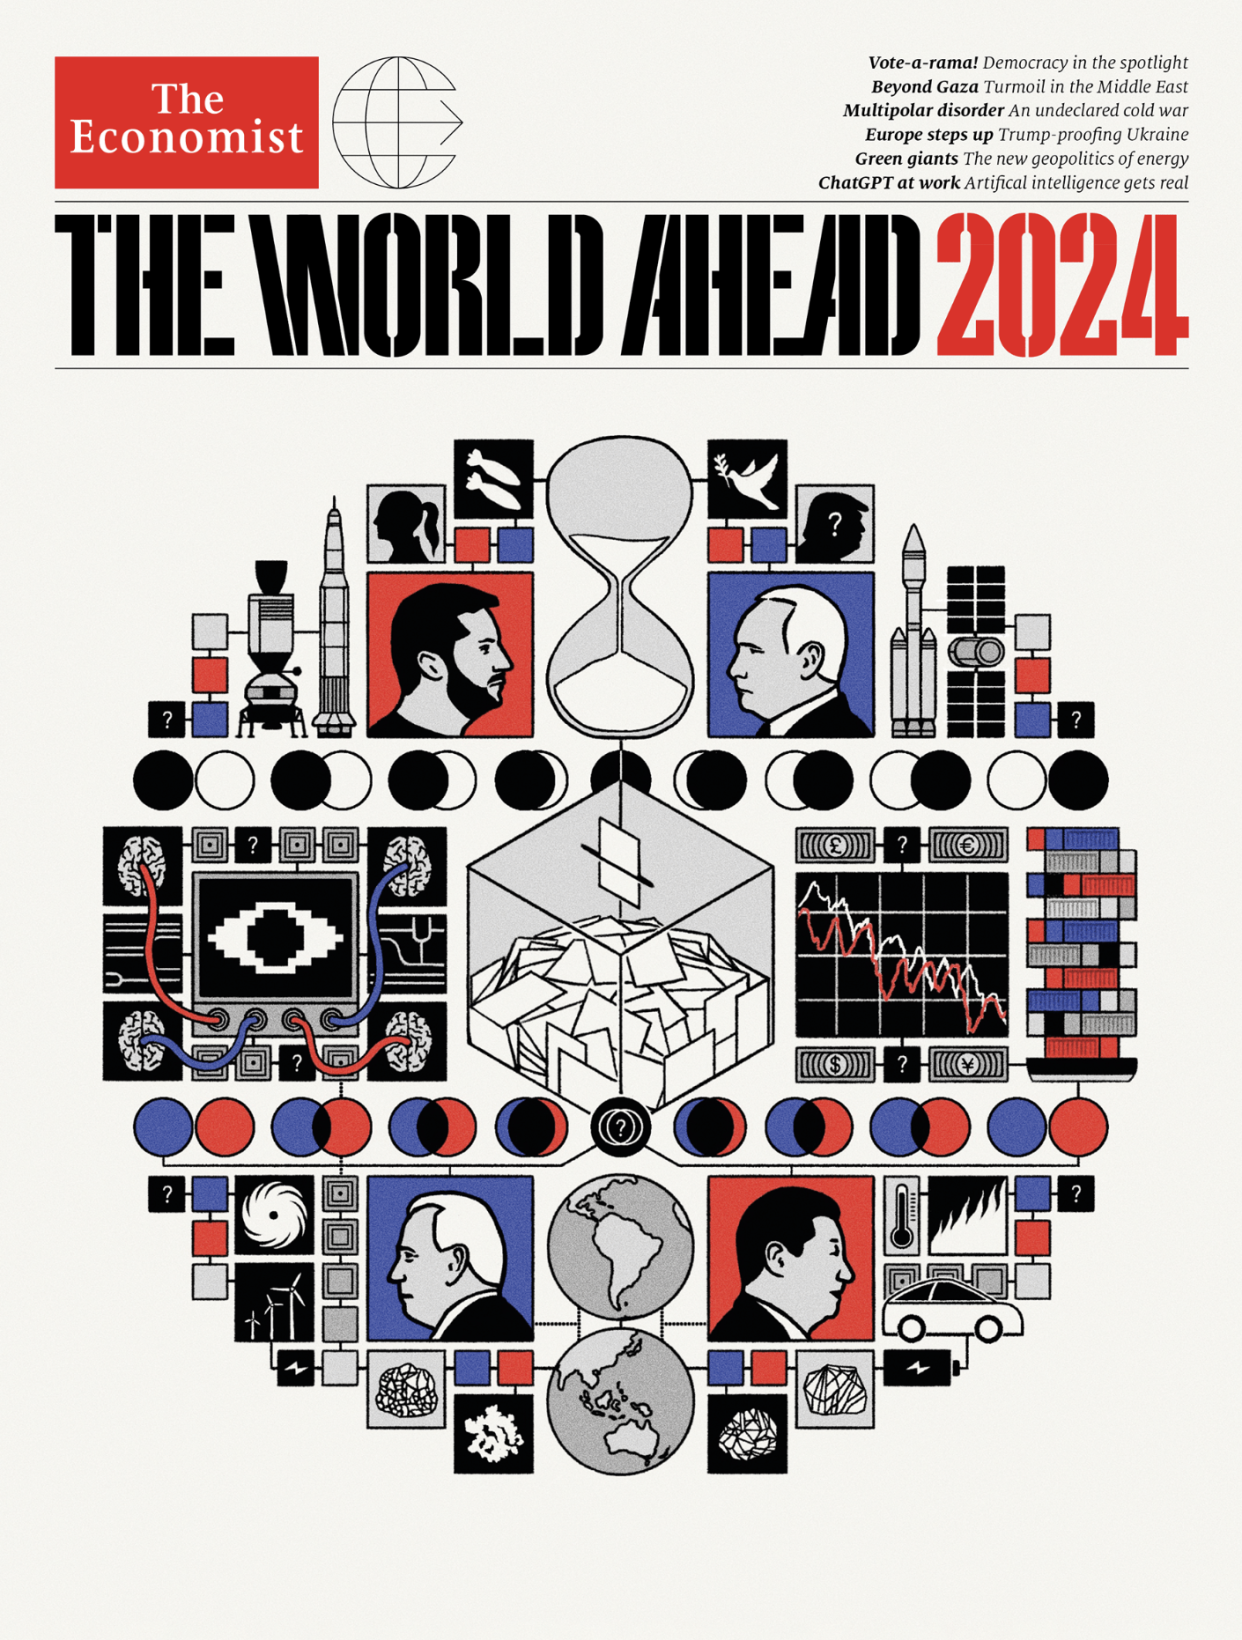 El semanario británico The Economist destacó seis siluetas de personalidades políticas en la portada de su edición especial The World Ahead 2024. Una de ellas es la Claudia Sheinbaum, la candidata a la presidencia de México por el partido Morena. (Imagen cortesía @TheEconomist)